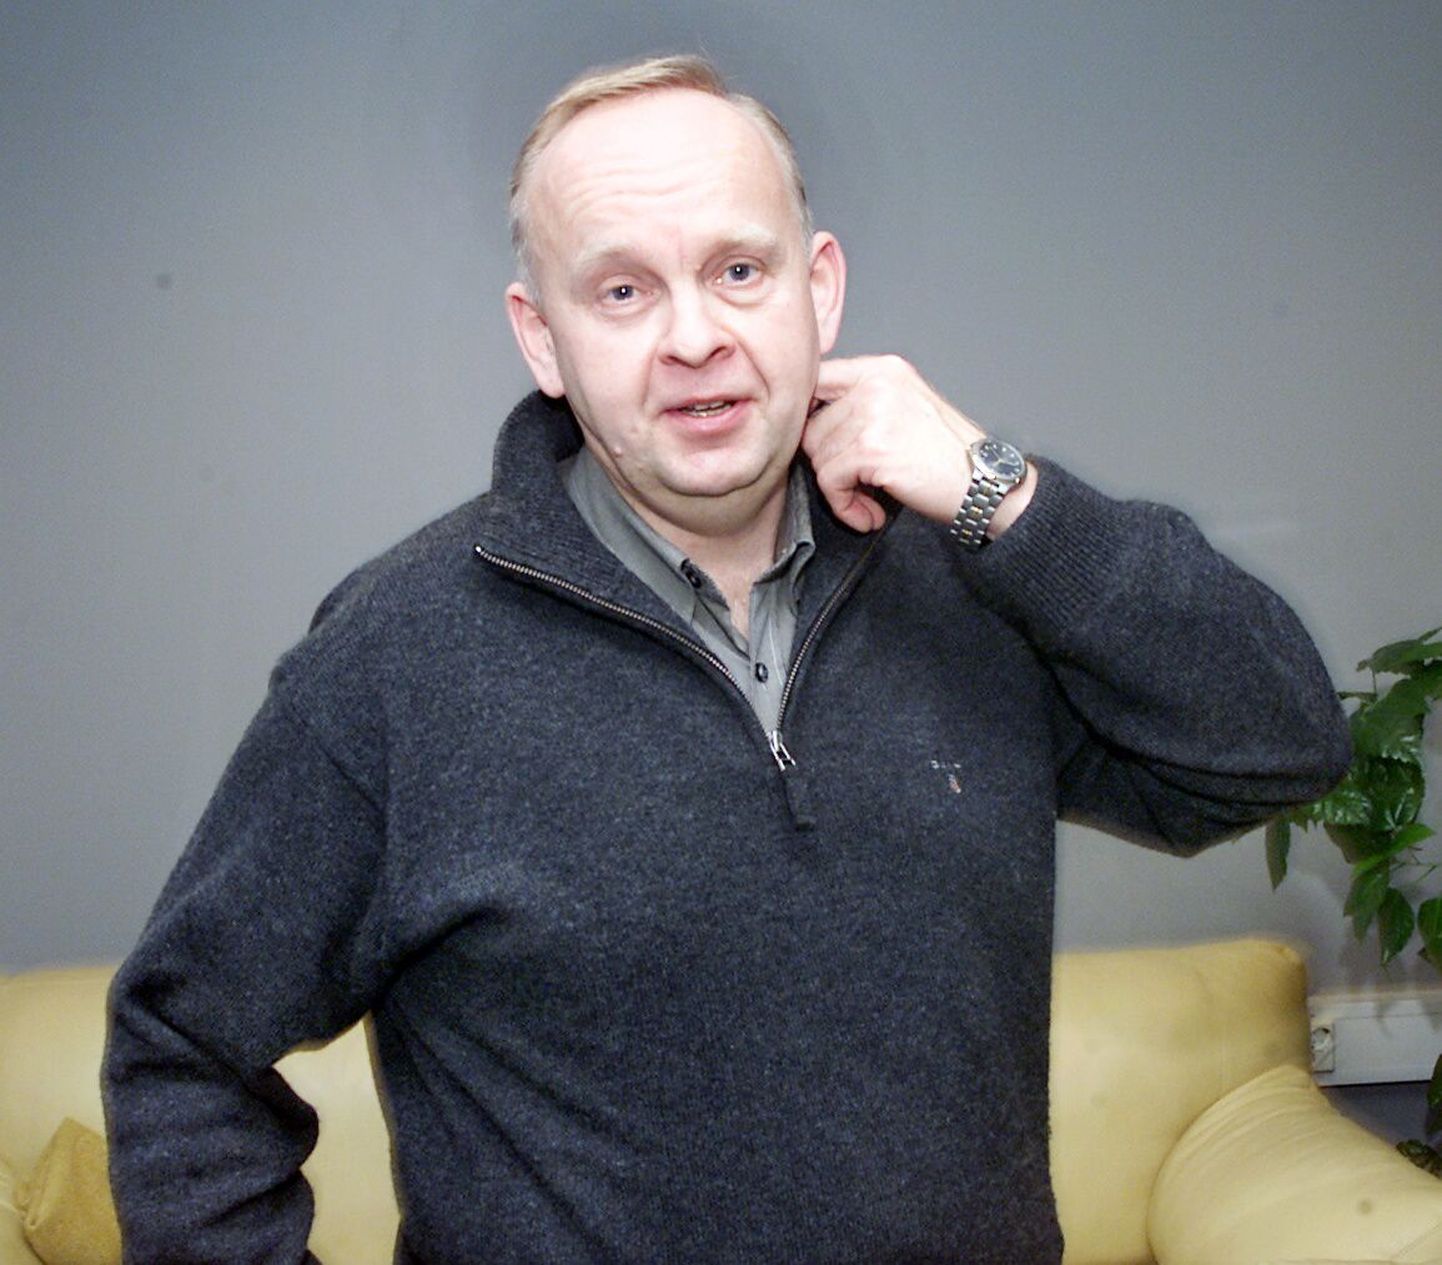 Vändra alevivolikogu juhib taas Tiit Kangert, kes sama tööd on teinud aastail 1998-2005.